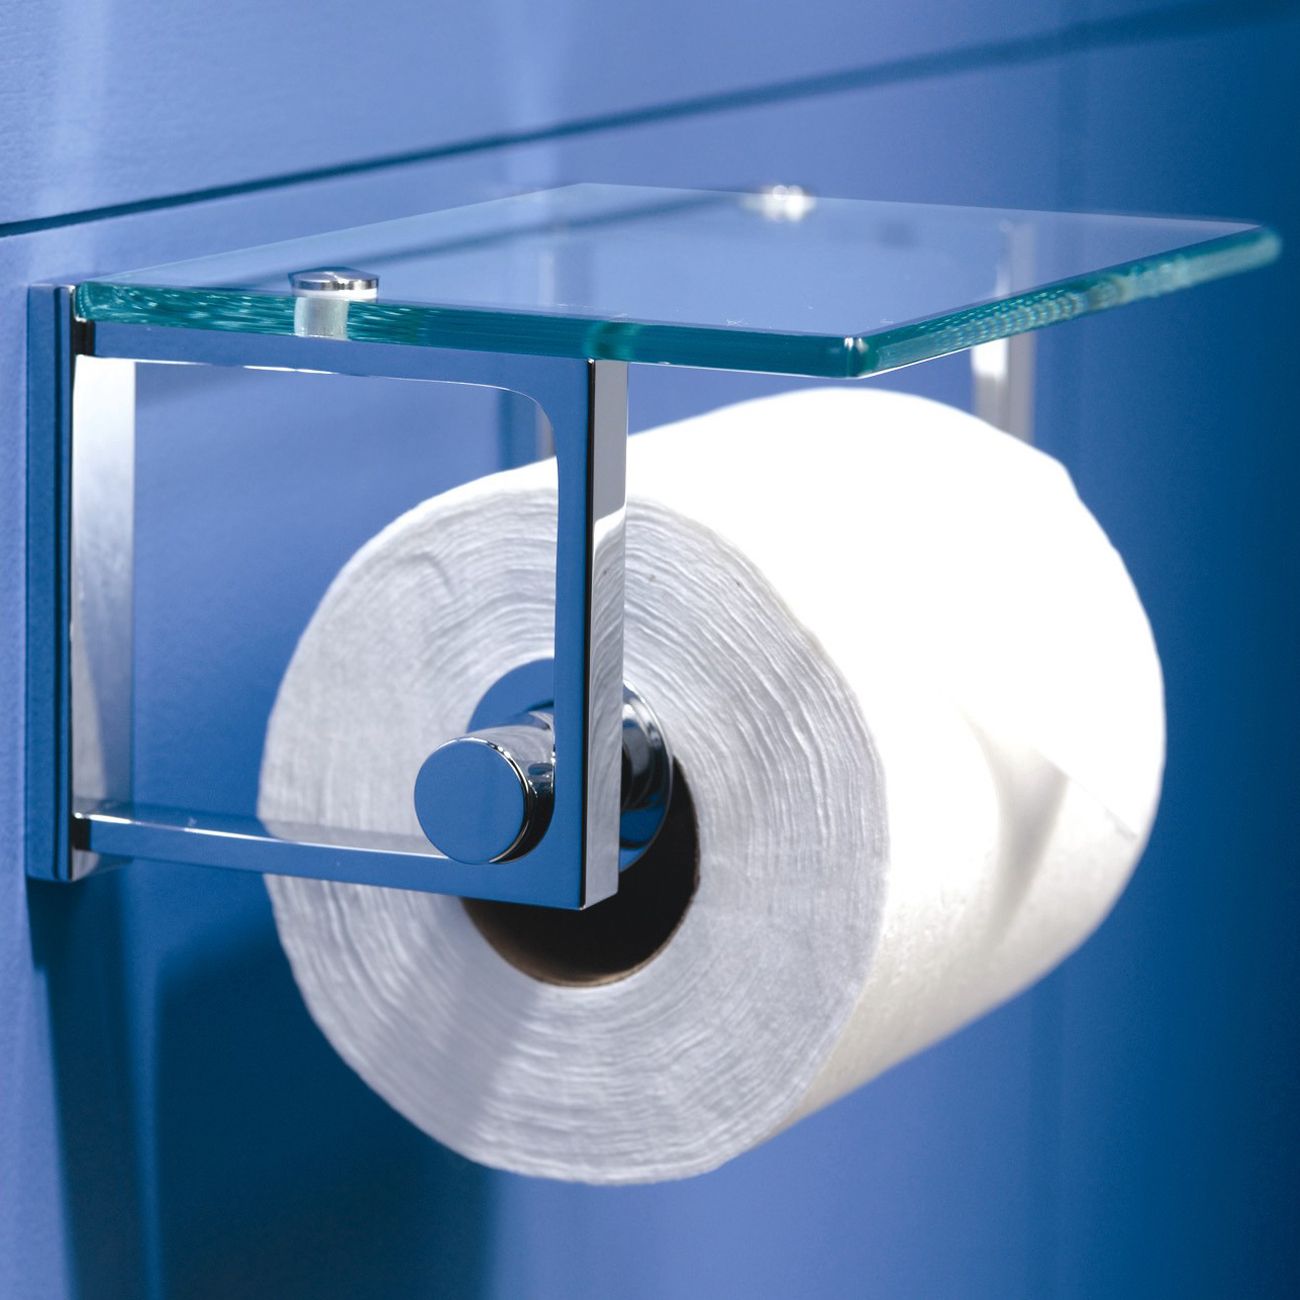 Ginger Frame Tempered Glass Shelf & Toilet Paper Holder - Satin Nickel